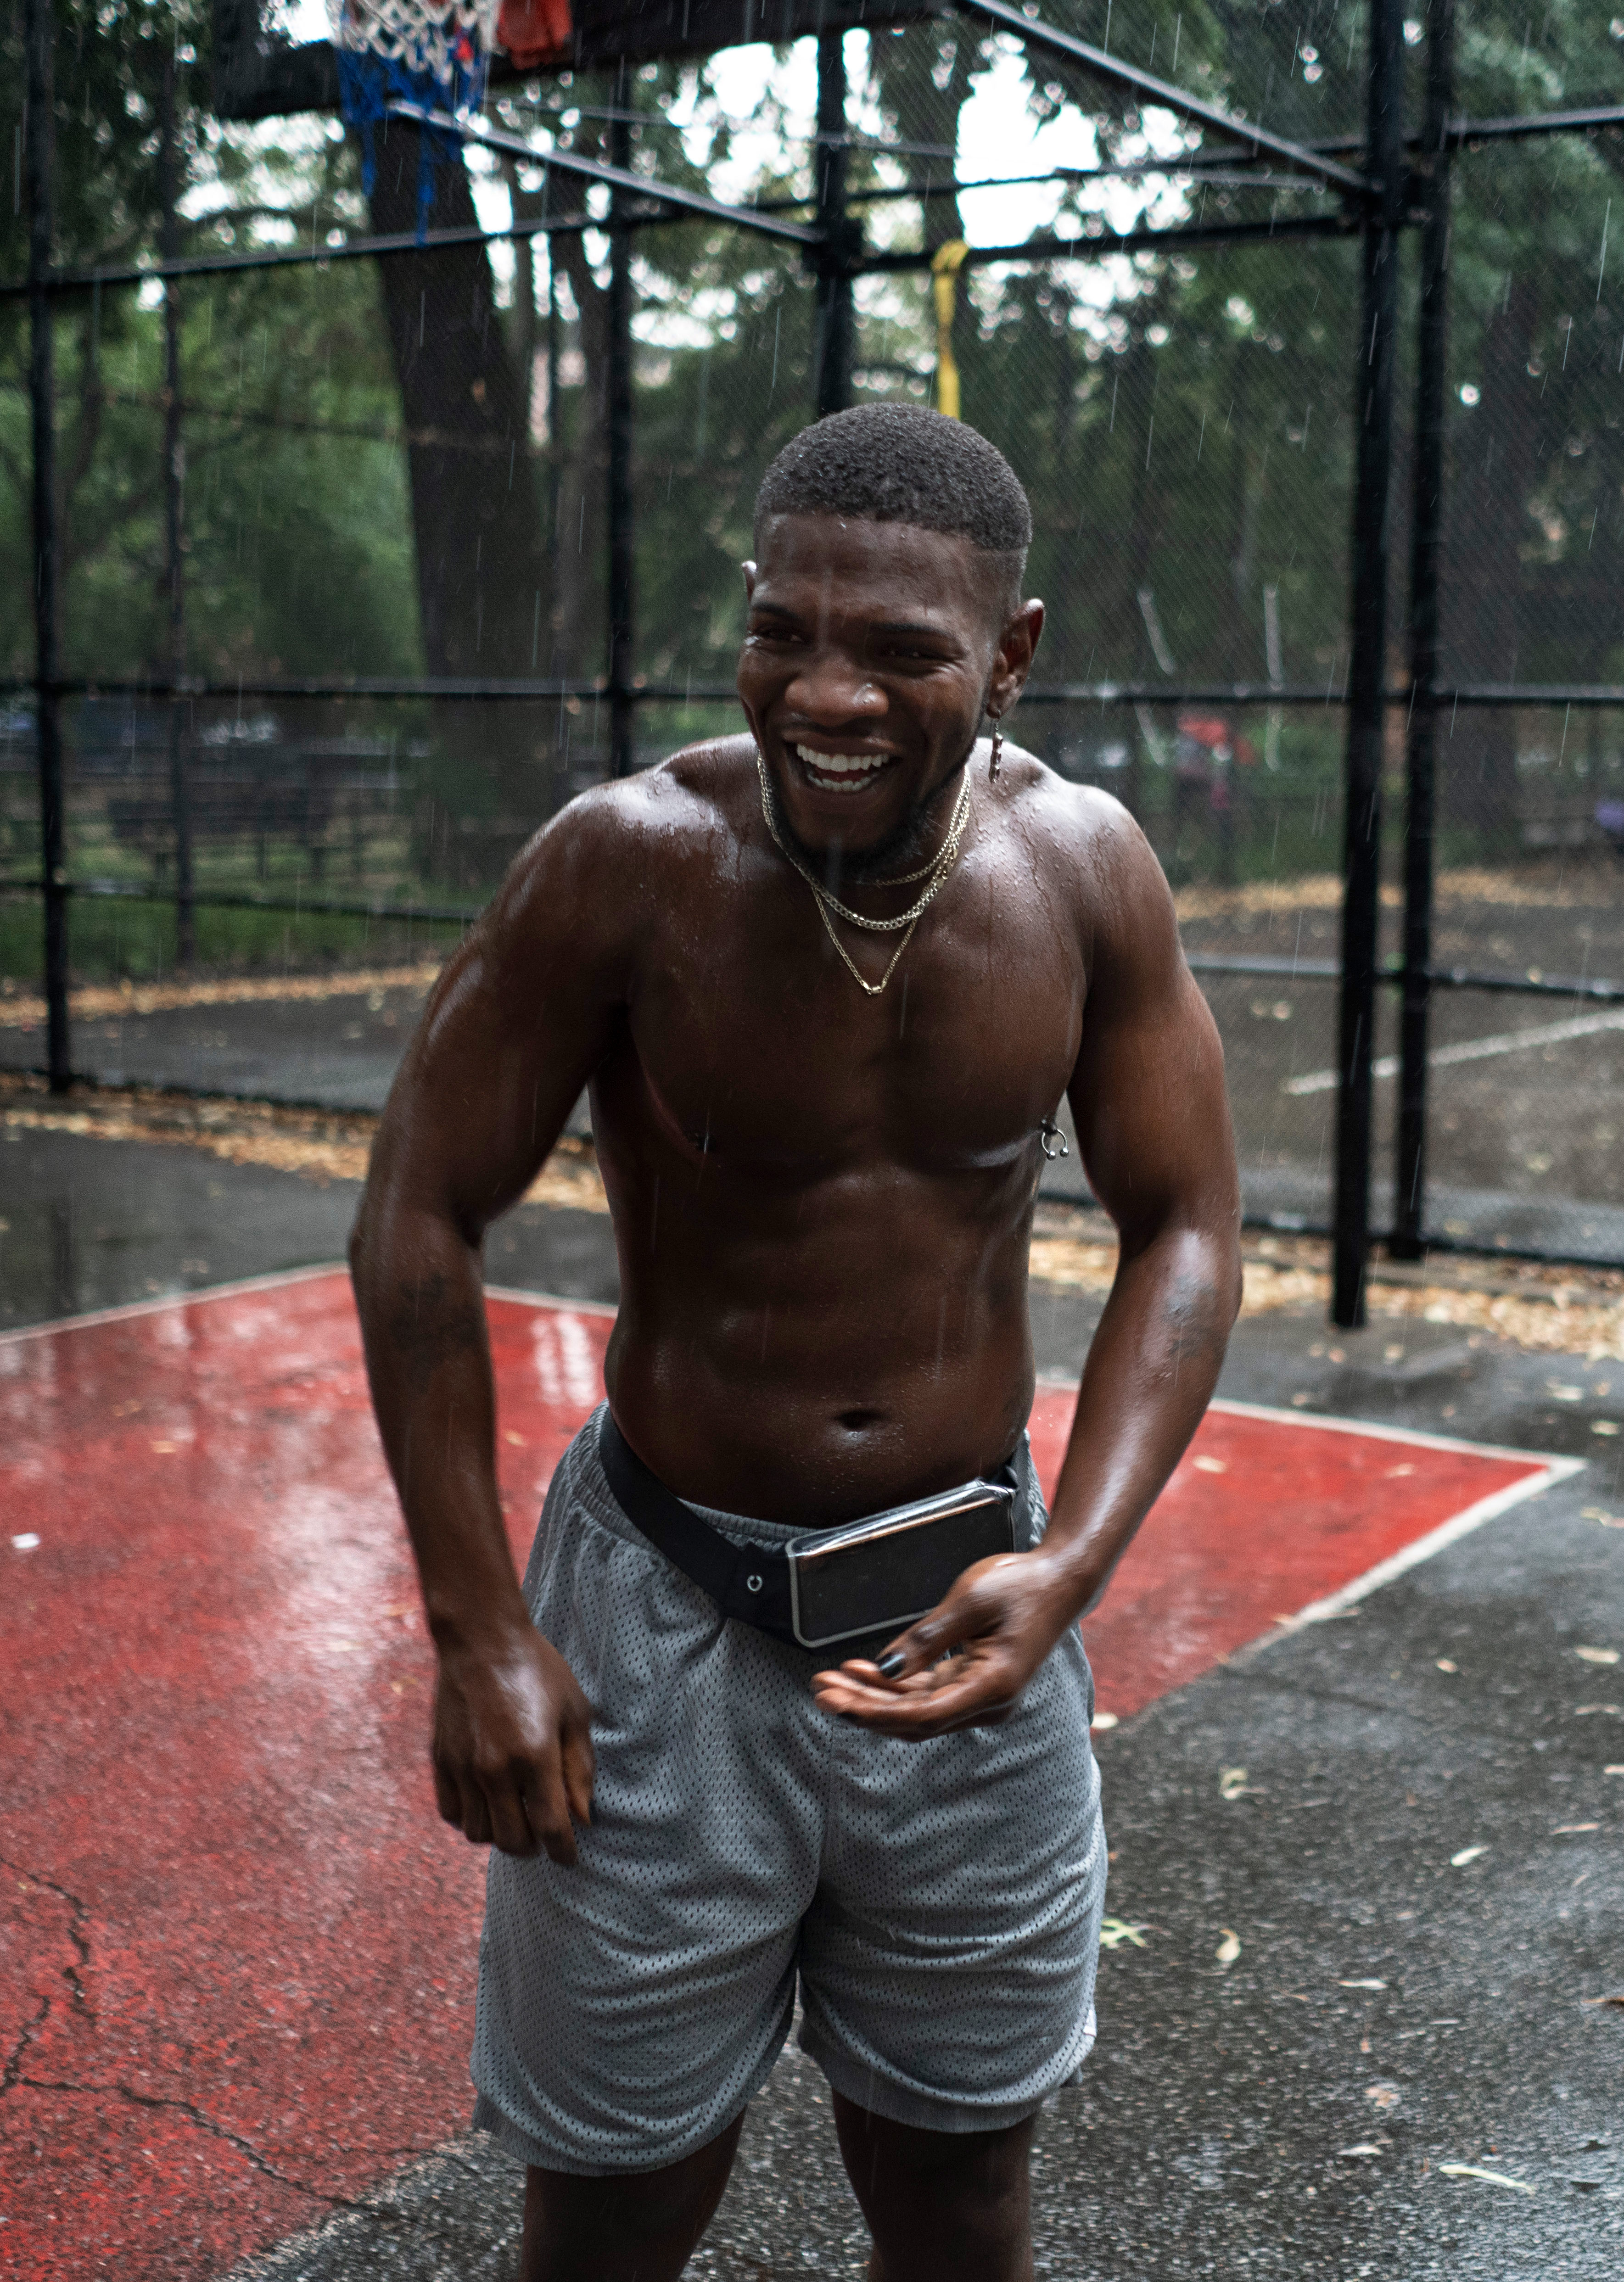 Mies nauraa sateessa paidattomana koripallokentällä.